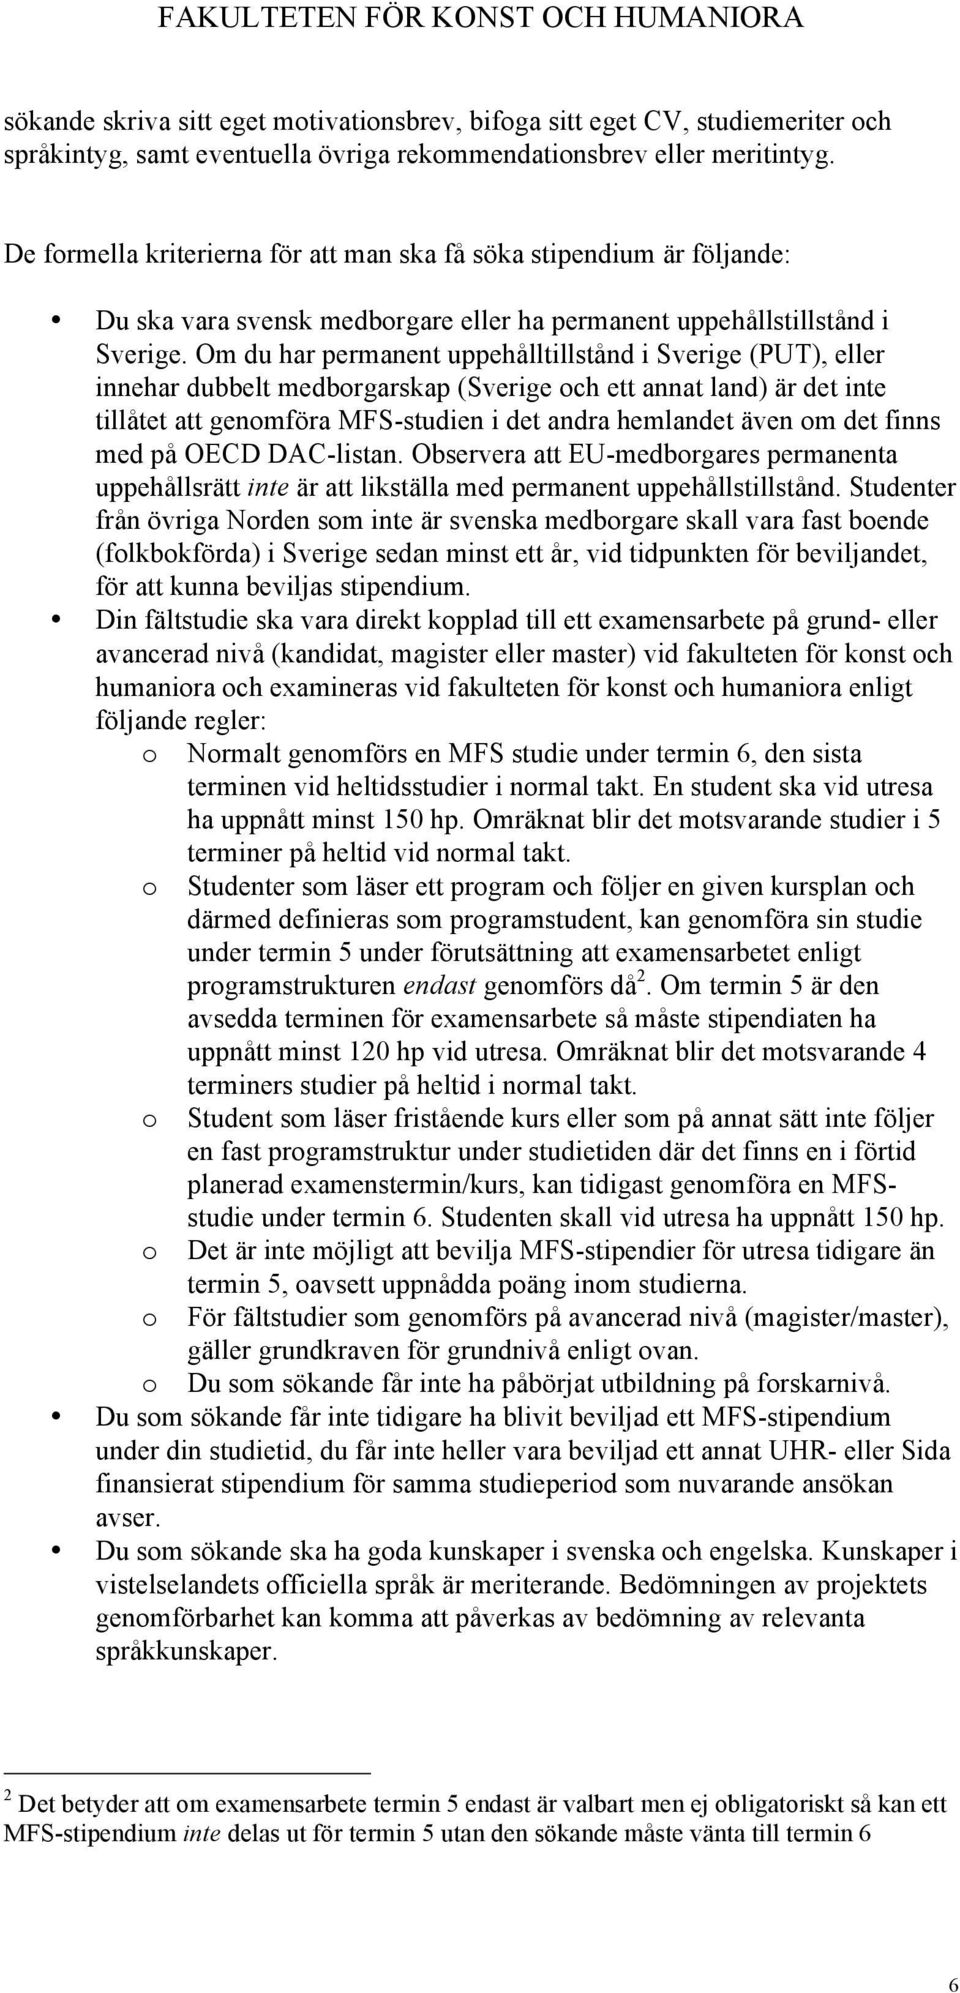 Om du har permanent uppehålltillstånd i Sverige (PUT), eller innehar dubbelt medborgarskap (Sverige och ett annat land) är det inte tillåtet att genomföra MFS-studien i det andra hemlandet även om